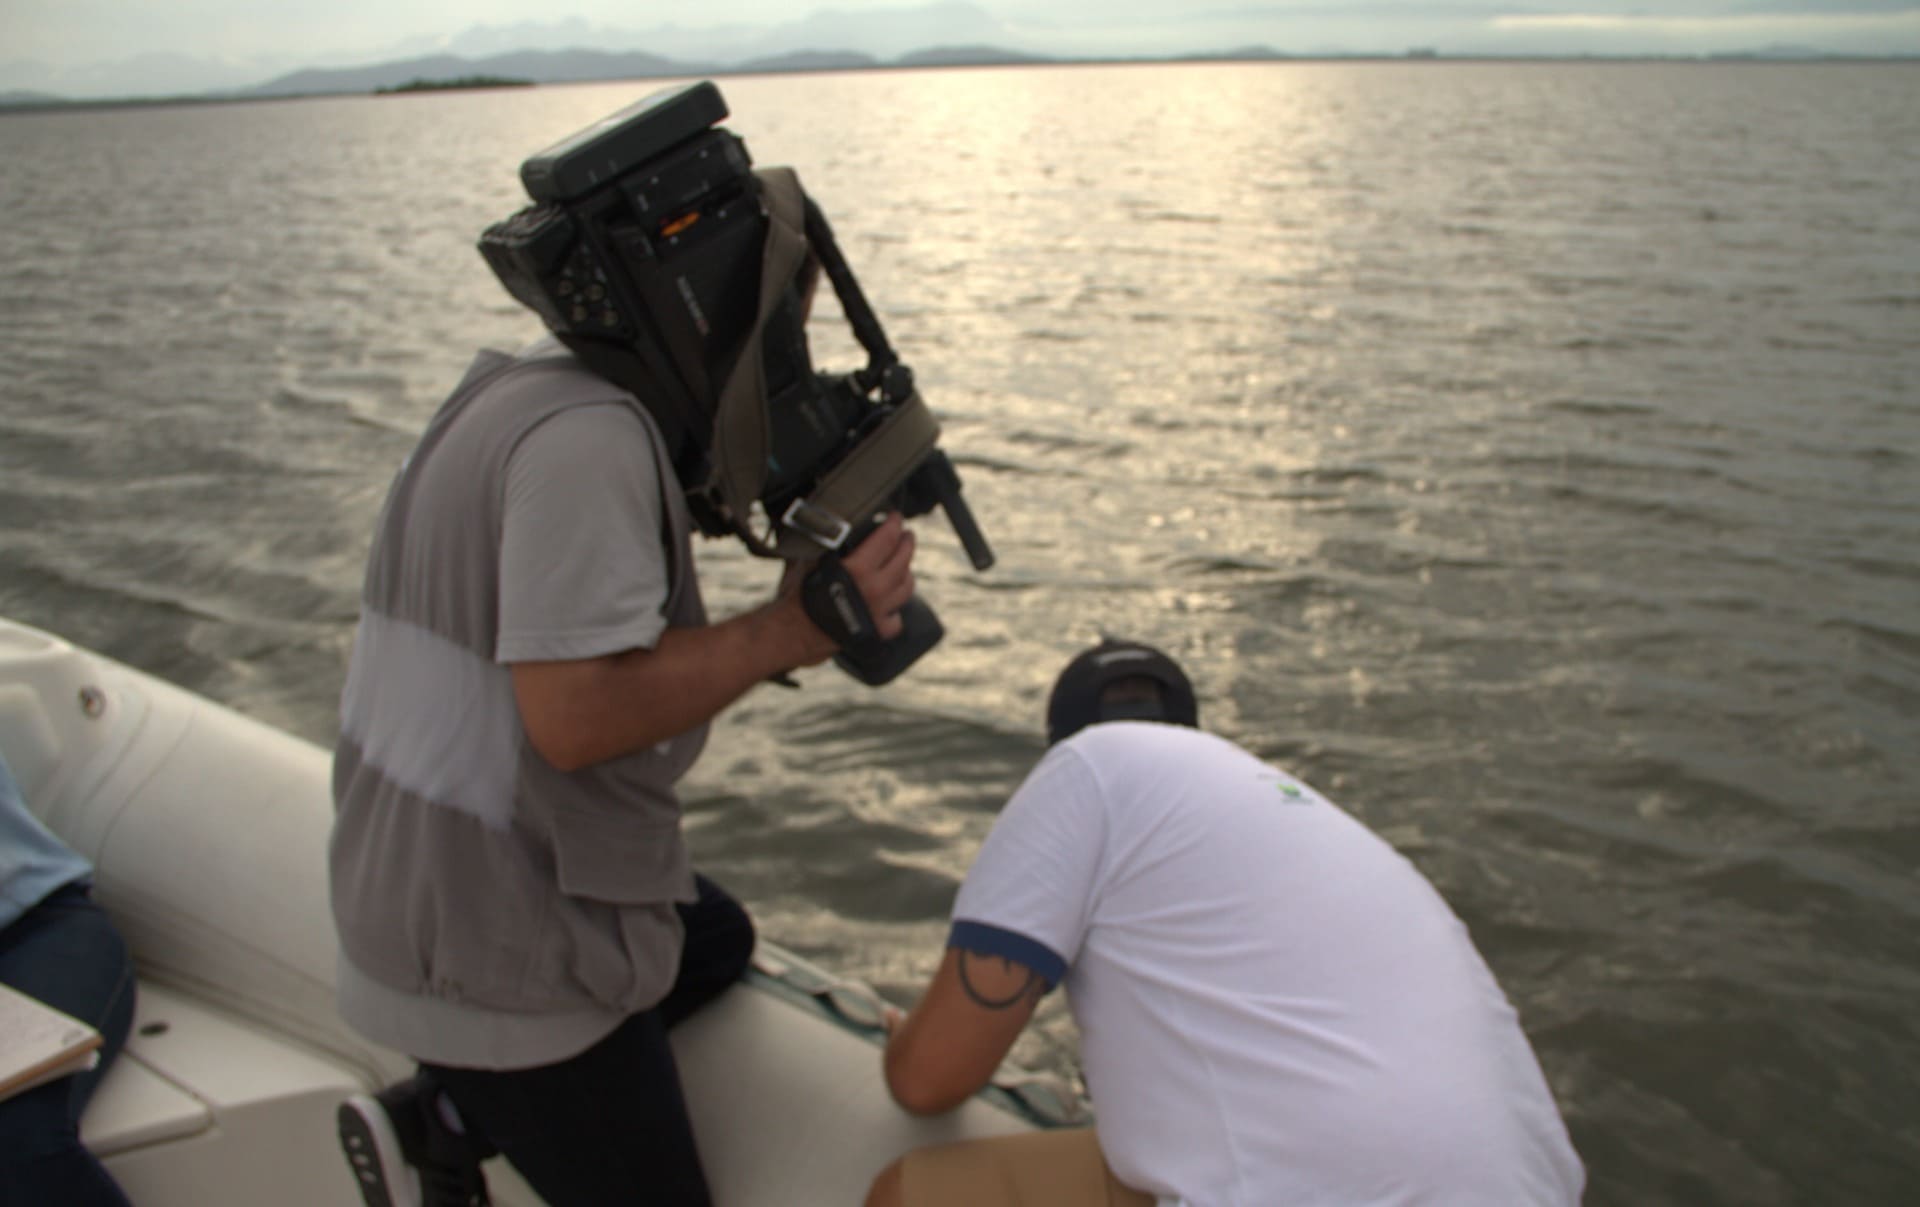 Cinegrafista da NSCTV, afiliada da Rede Globo, grava pesquisador do Toninhas do Brasil para matéria sobre as toninhas